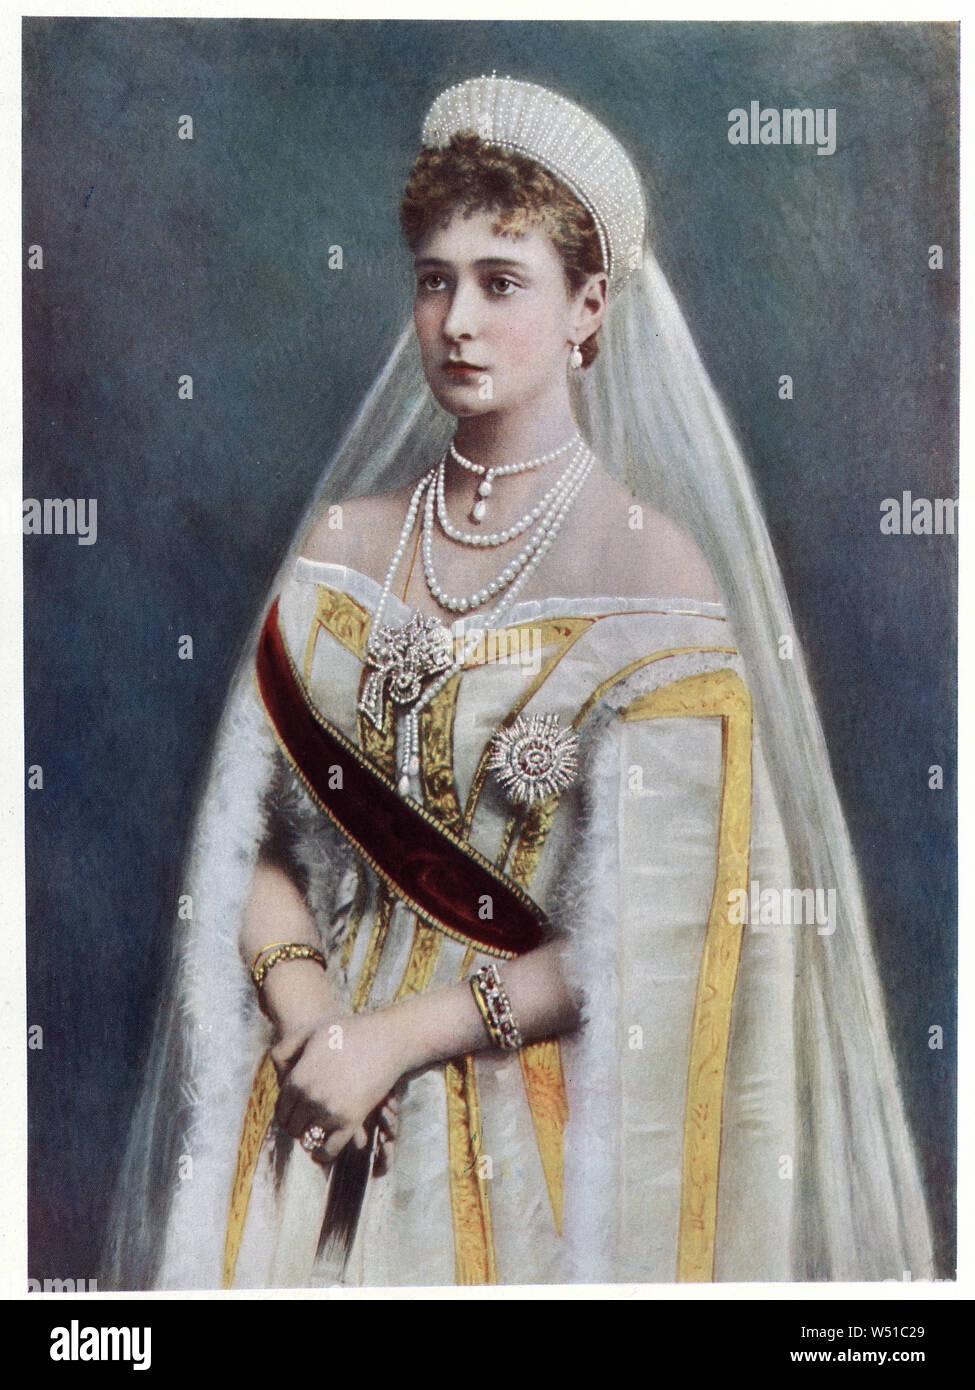 Alexandra Feodorovna (6 giugno 1872 - 17 luglio 1918) era imperatrice di Russia in qualità di coniuge di Nicholas II (l'ultimo dominatore dell'impero russo) dal loro matrimonio il 26 novembre 1894 fino alla sua abdicazione forzata il 15 marzo 1917. Foto Stock